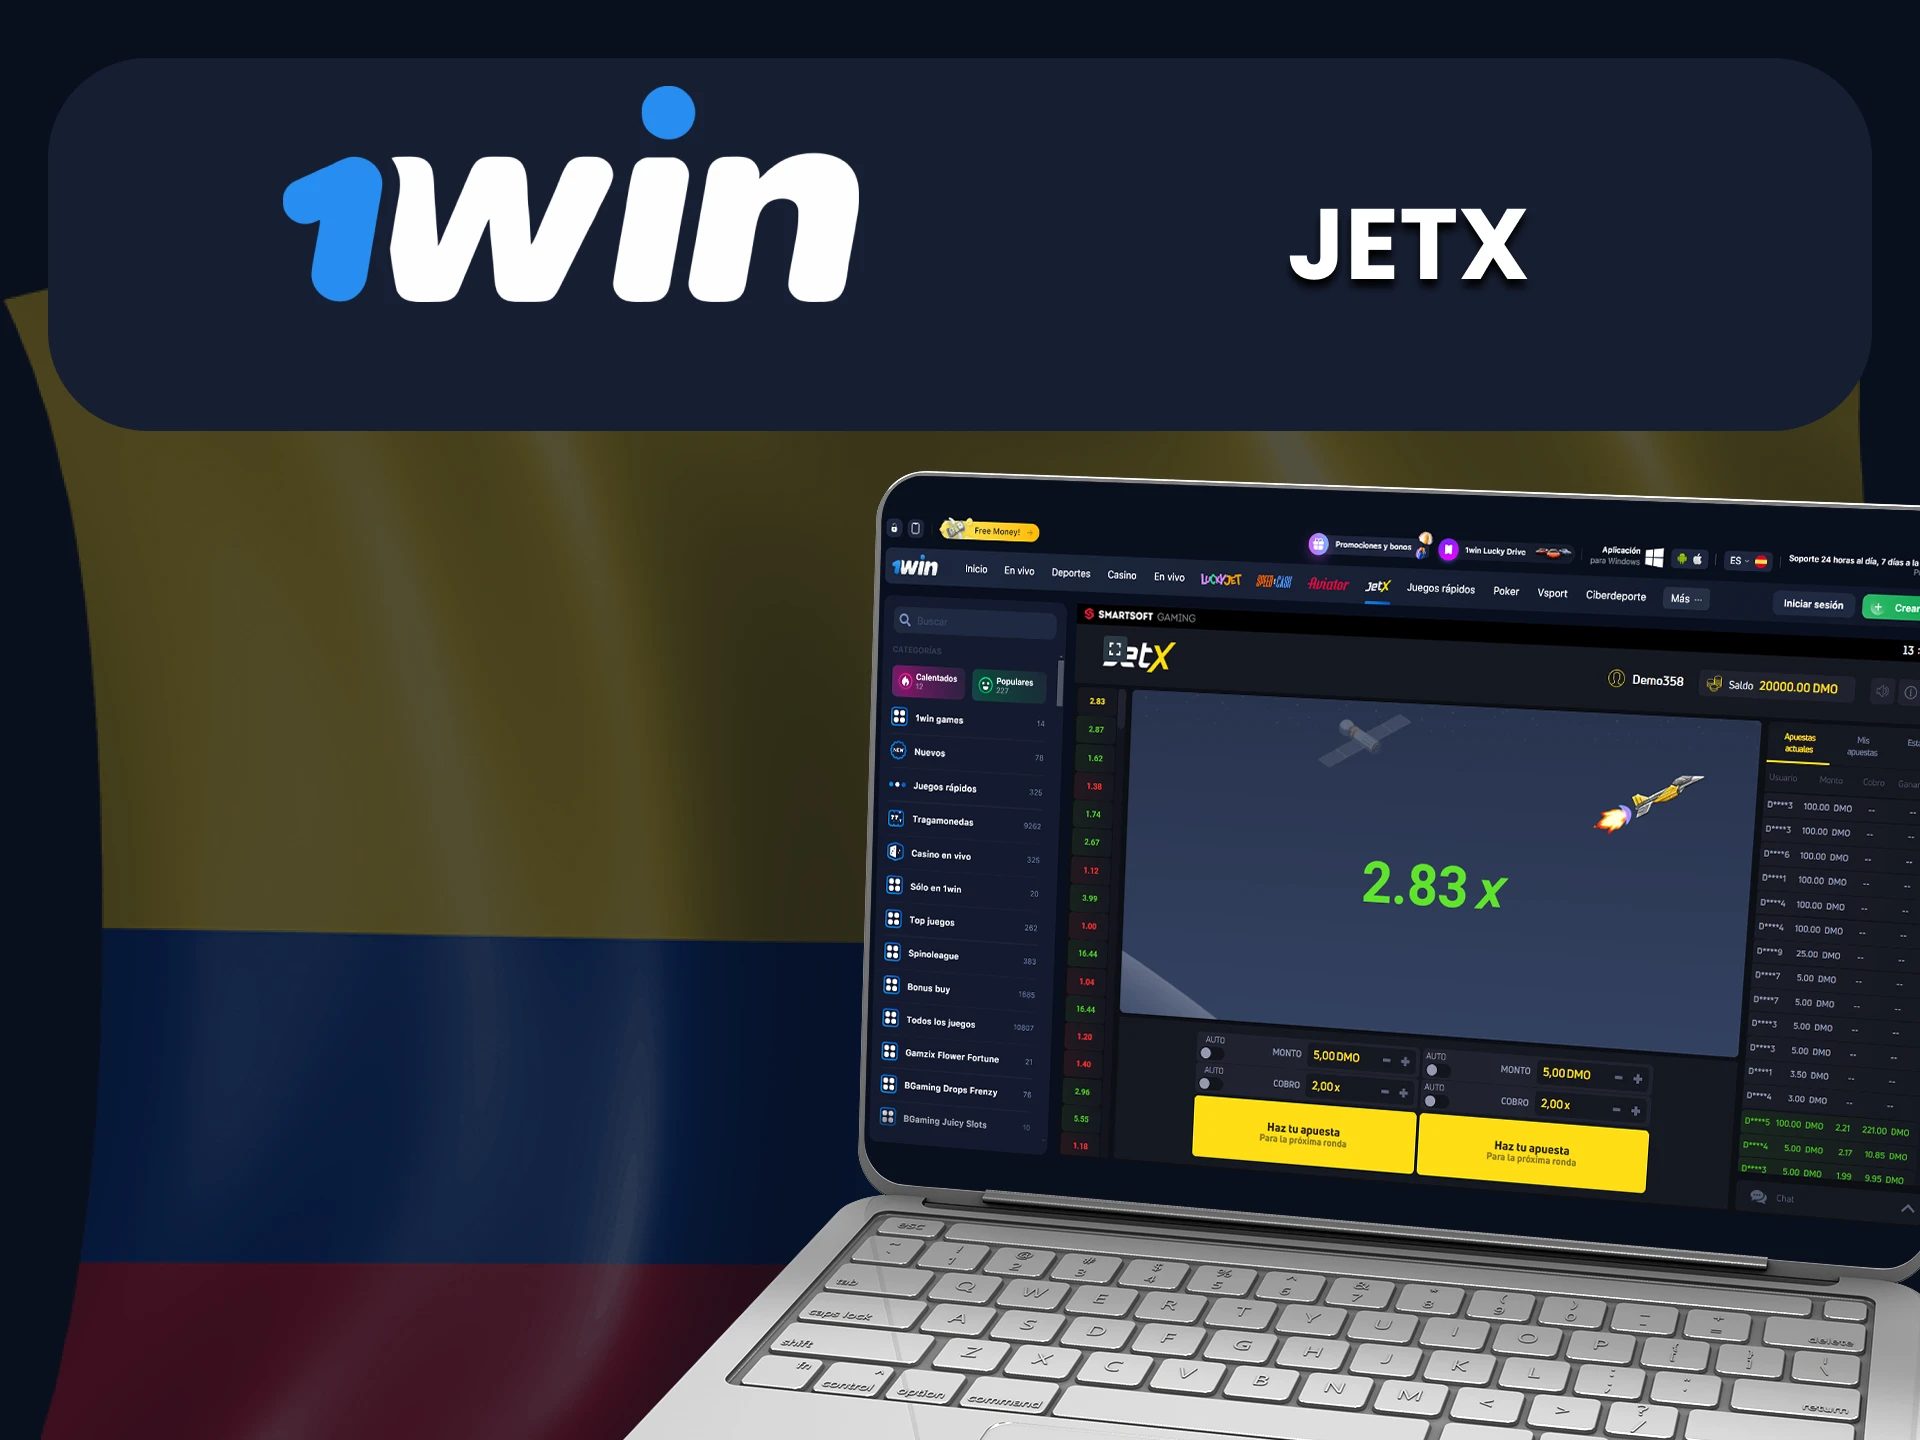 Juega JetX en el sitio web de 1Win.